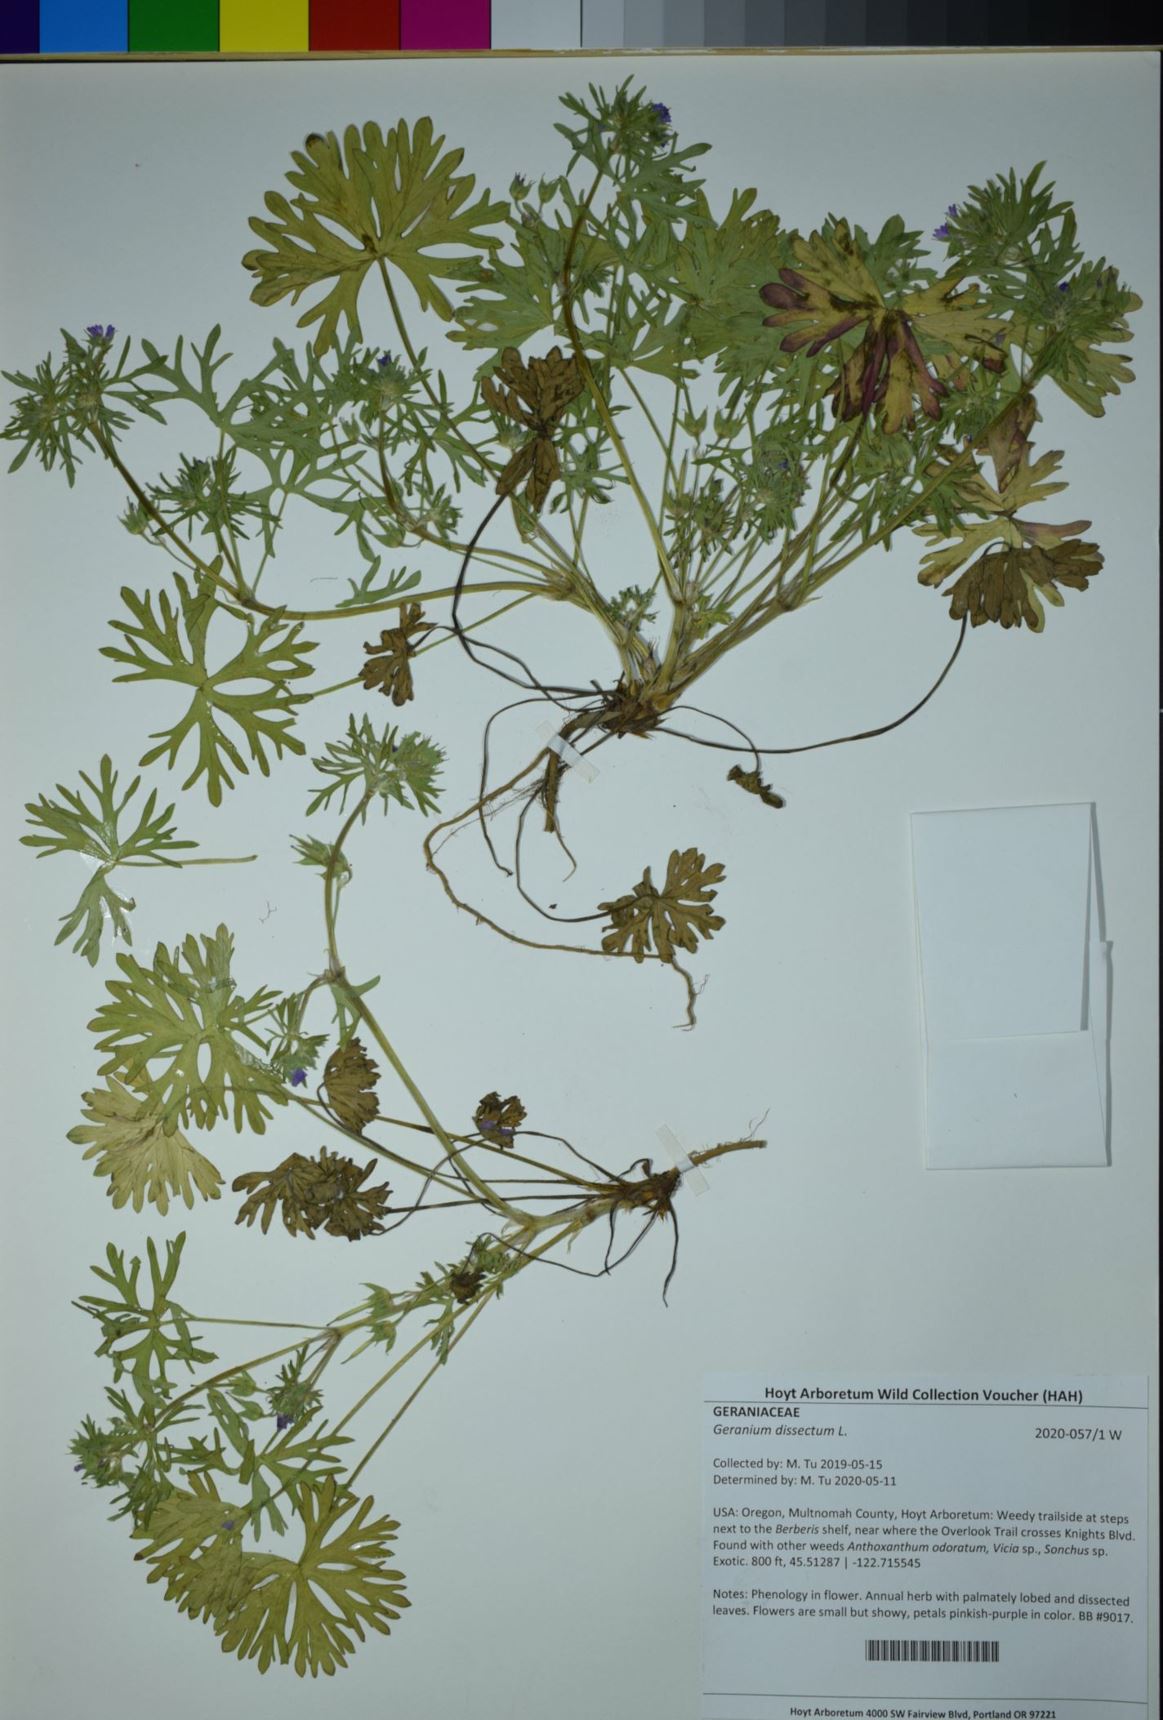 Geranium dissectum - cutleaf geranium